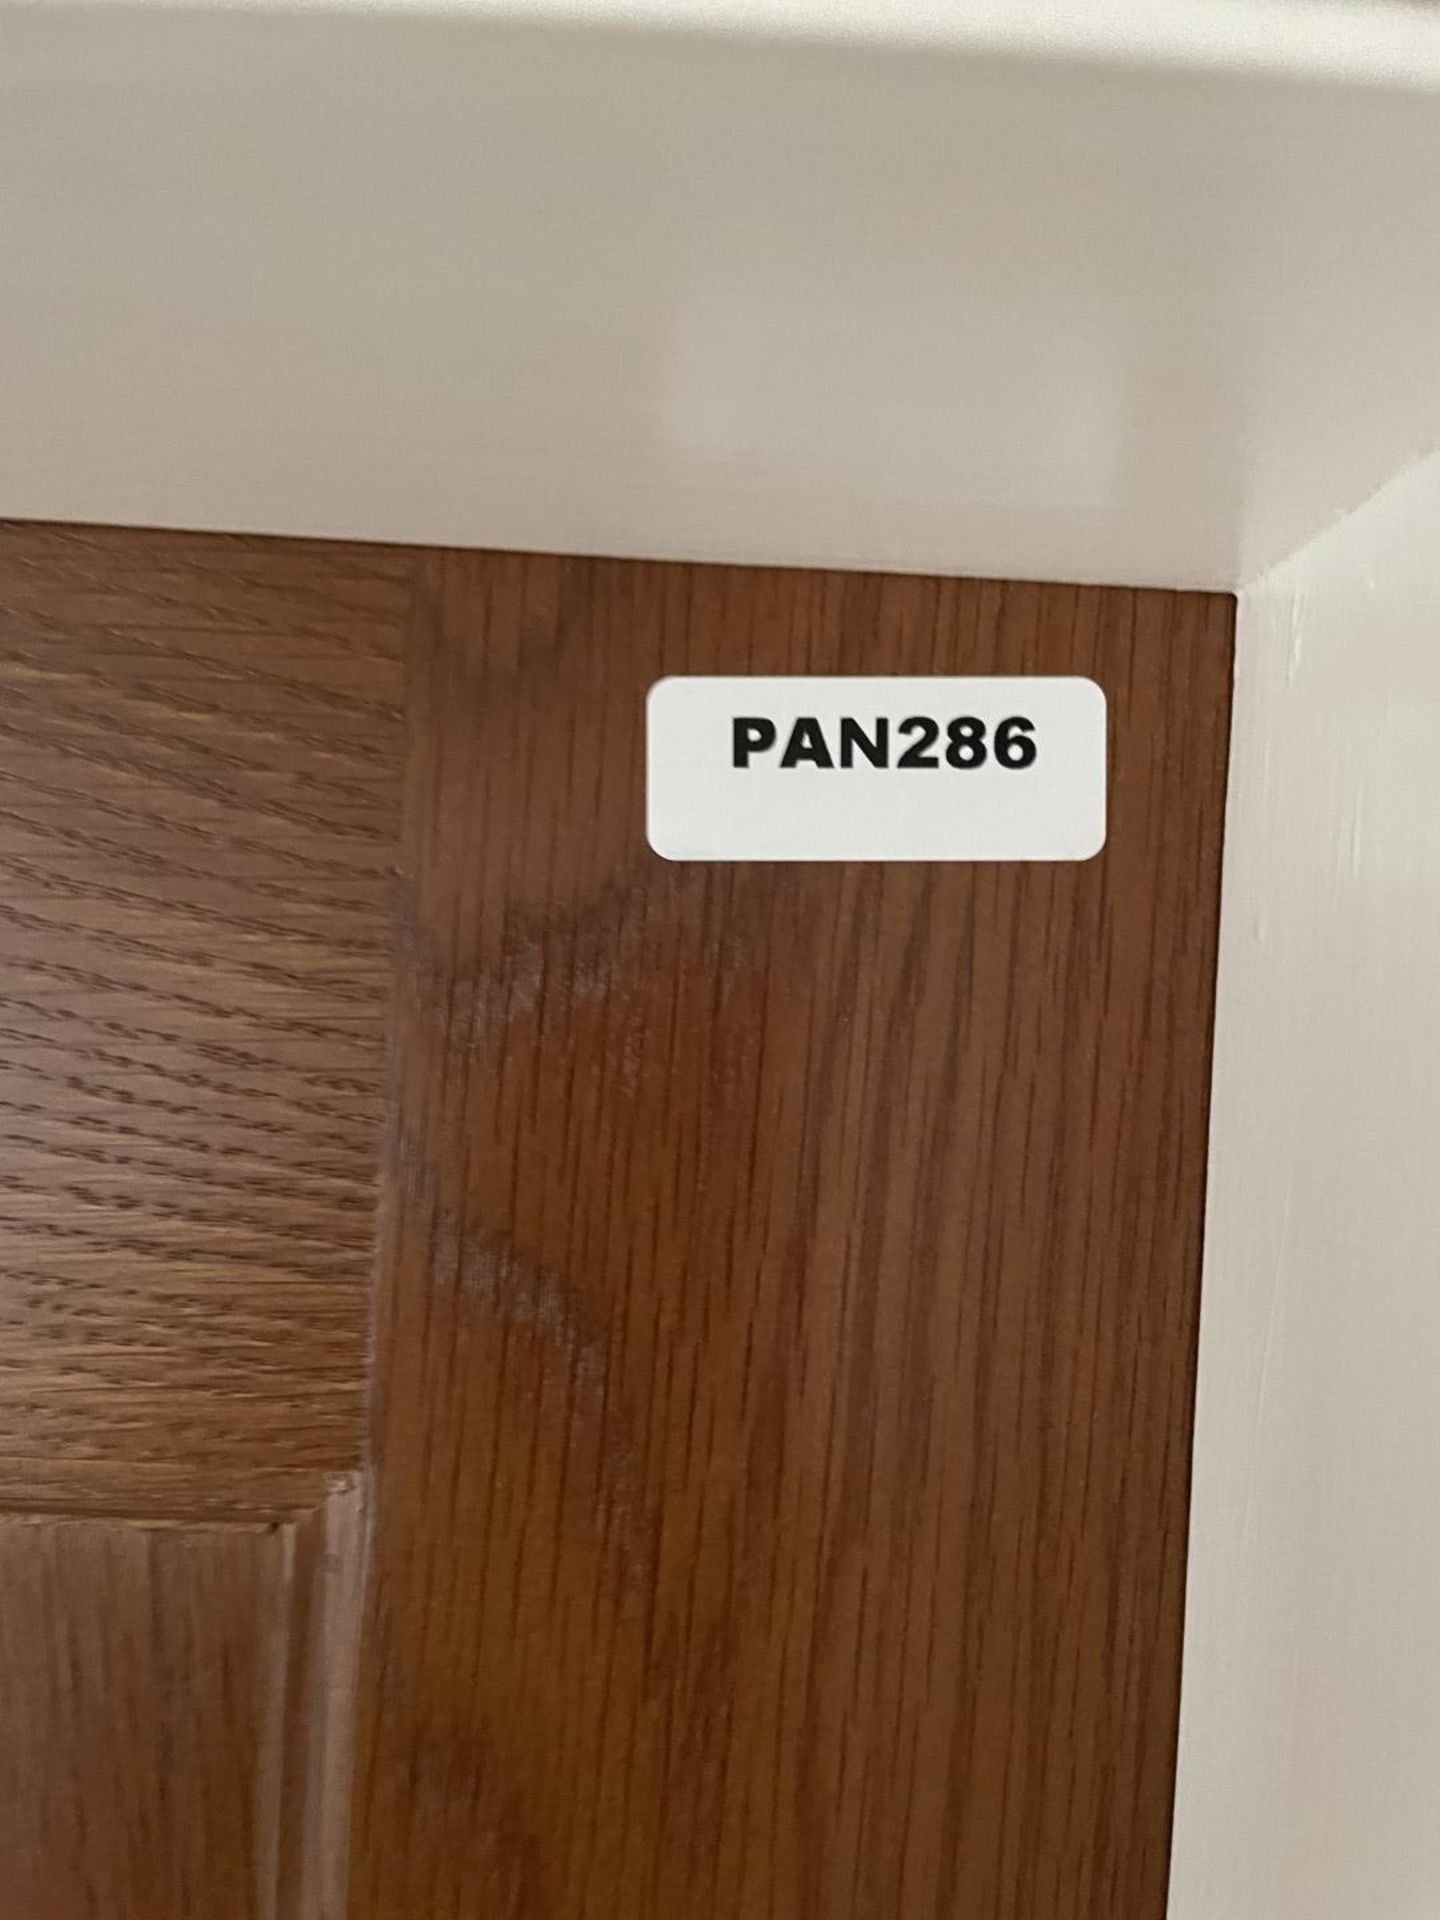 1 x Solid Oak Wooden Lockable Internal Door - Includes Handles and Hinges - Ref: PAN286 / - Image 14 of 17